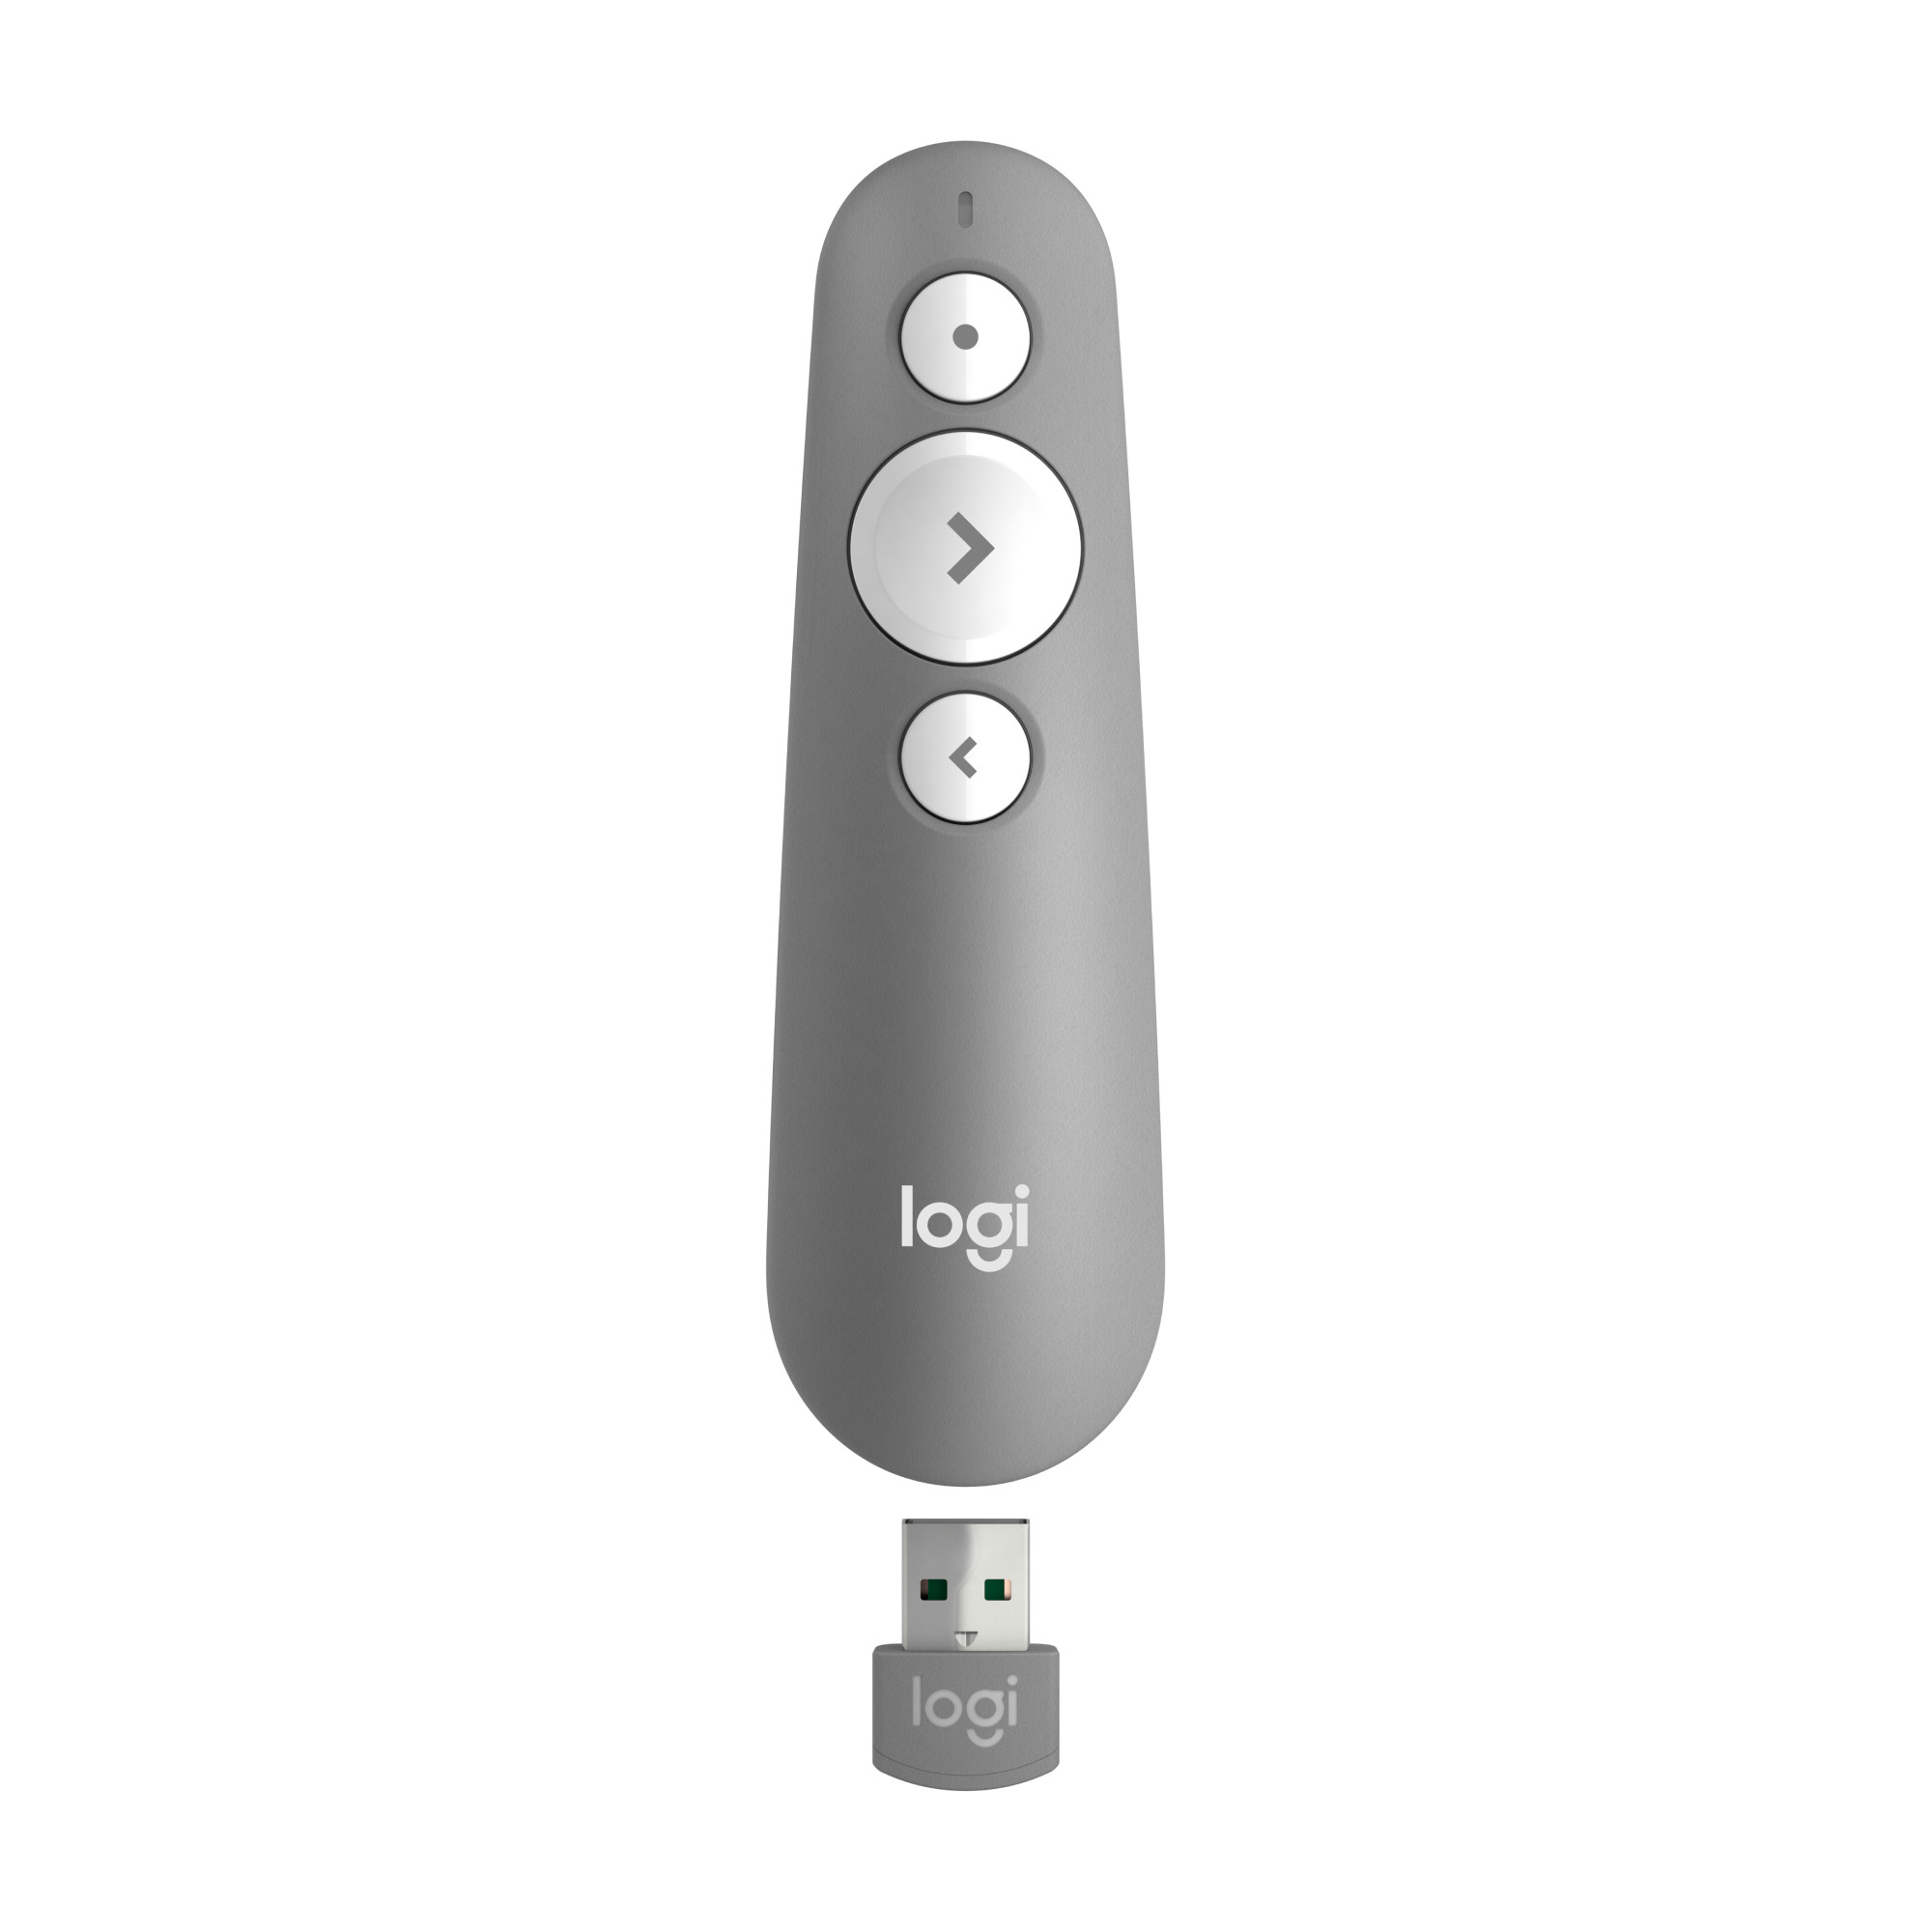 LOGITECH R500 Presenter 910005843 Wireless Remote Graphite